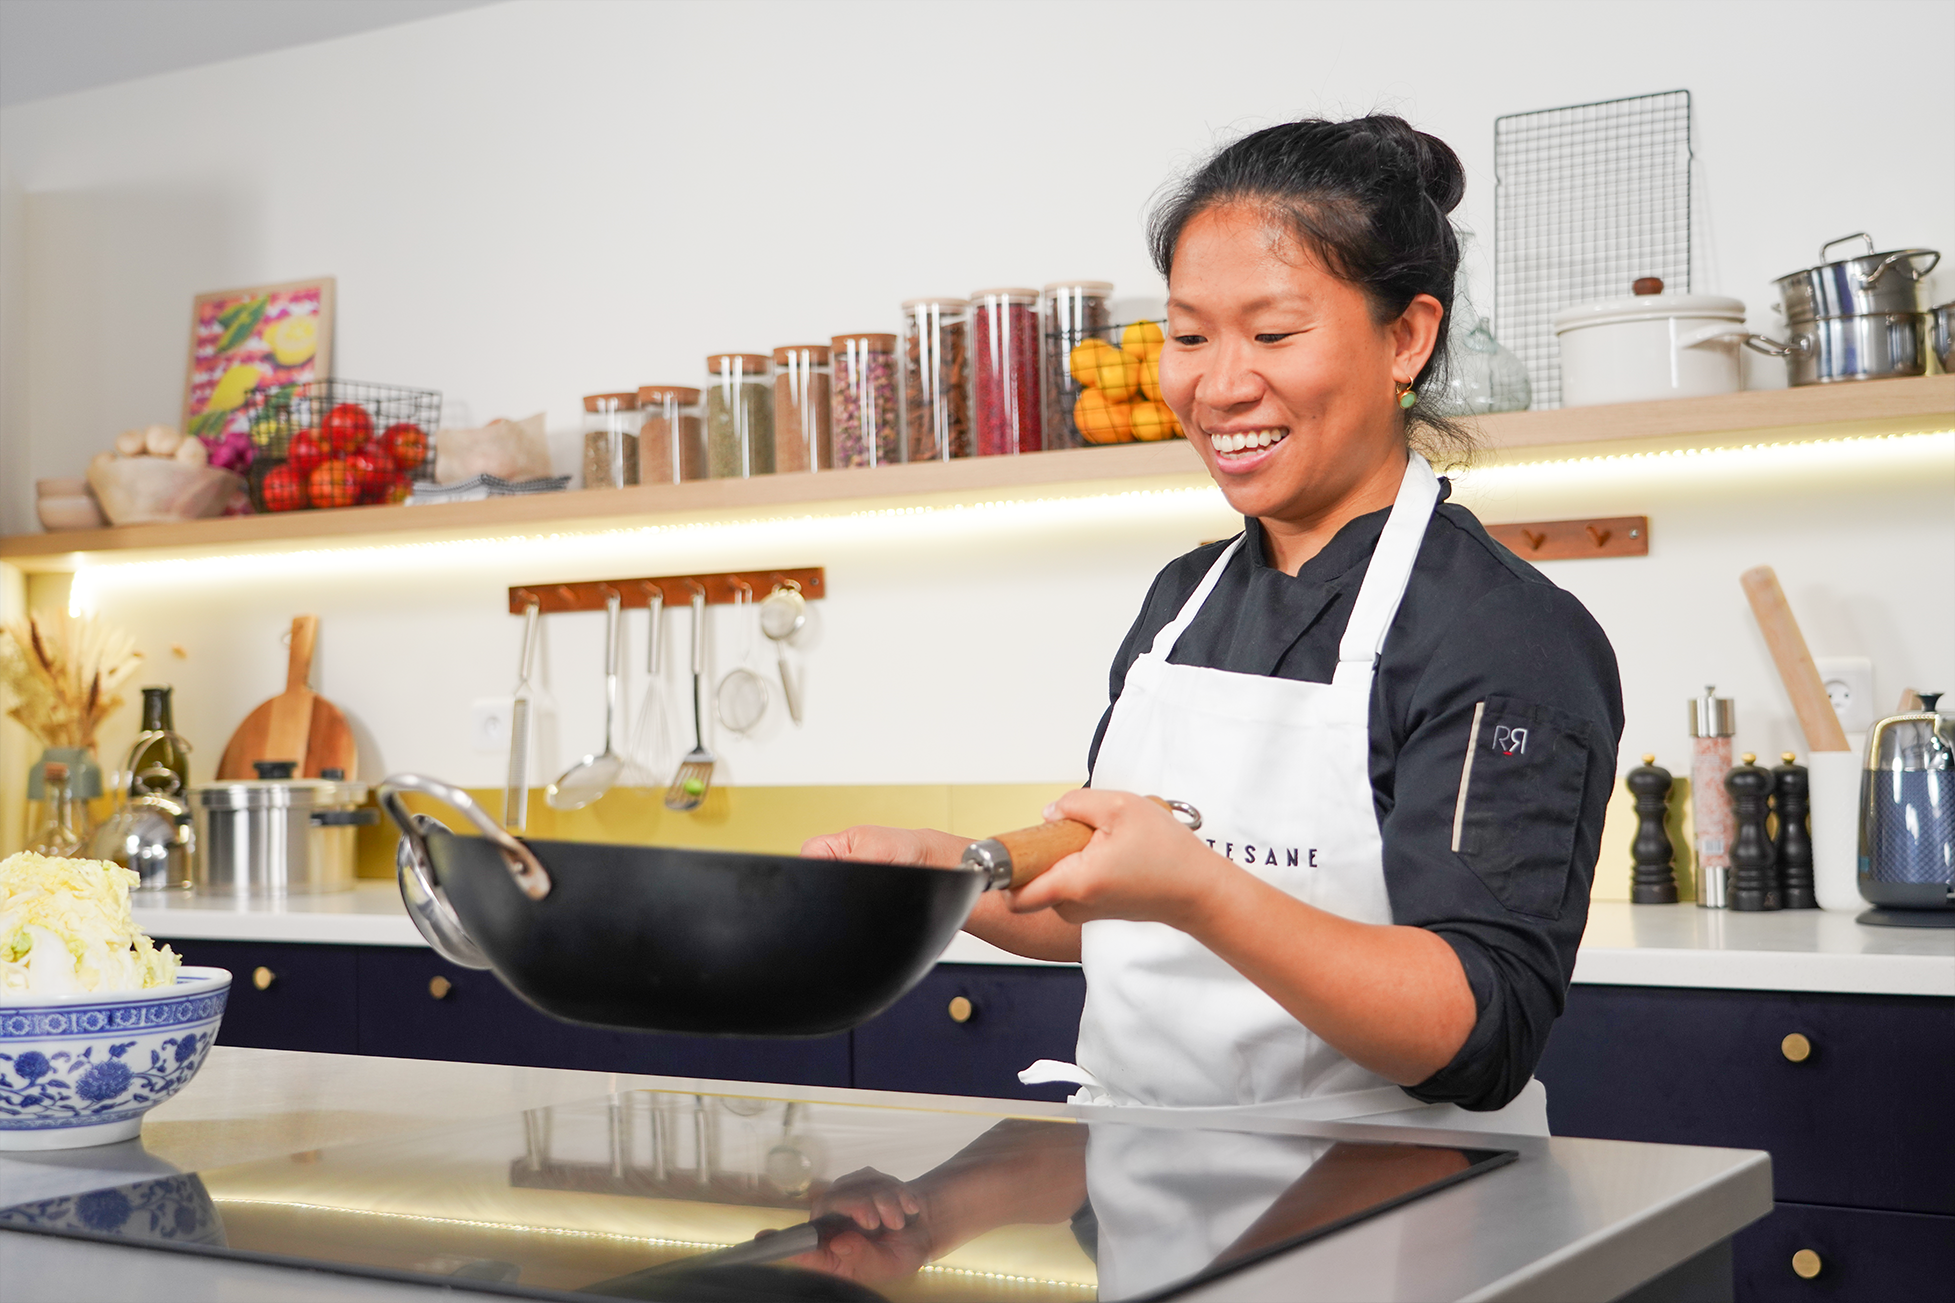 la cheffe Lucy Chen utilisant un wok dans son cours de cuisine chinoise sur Artesane.